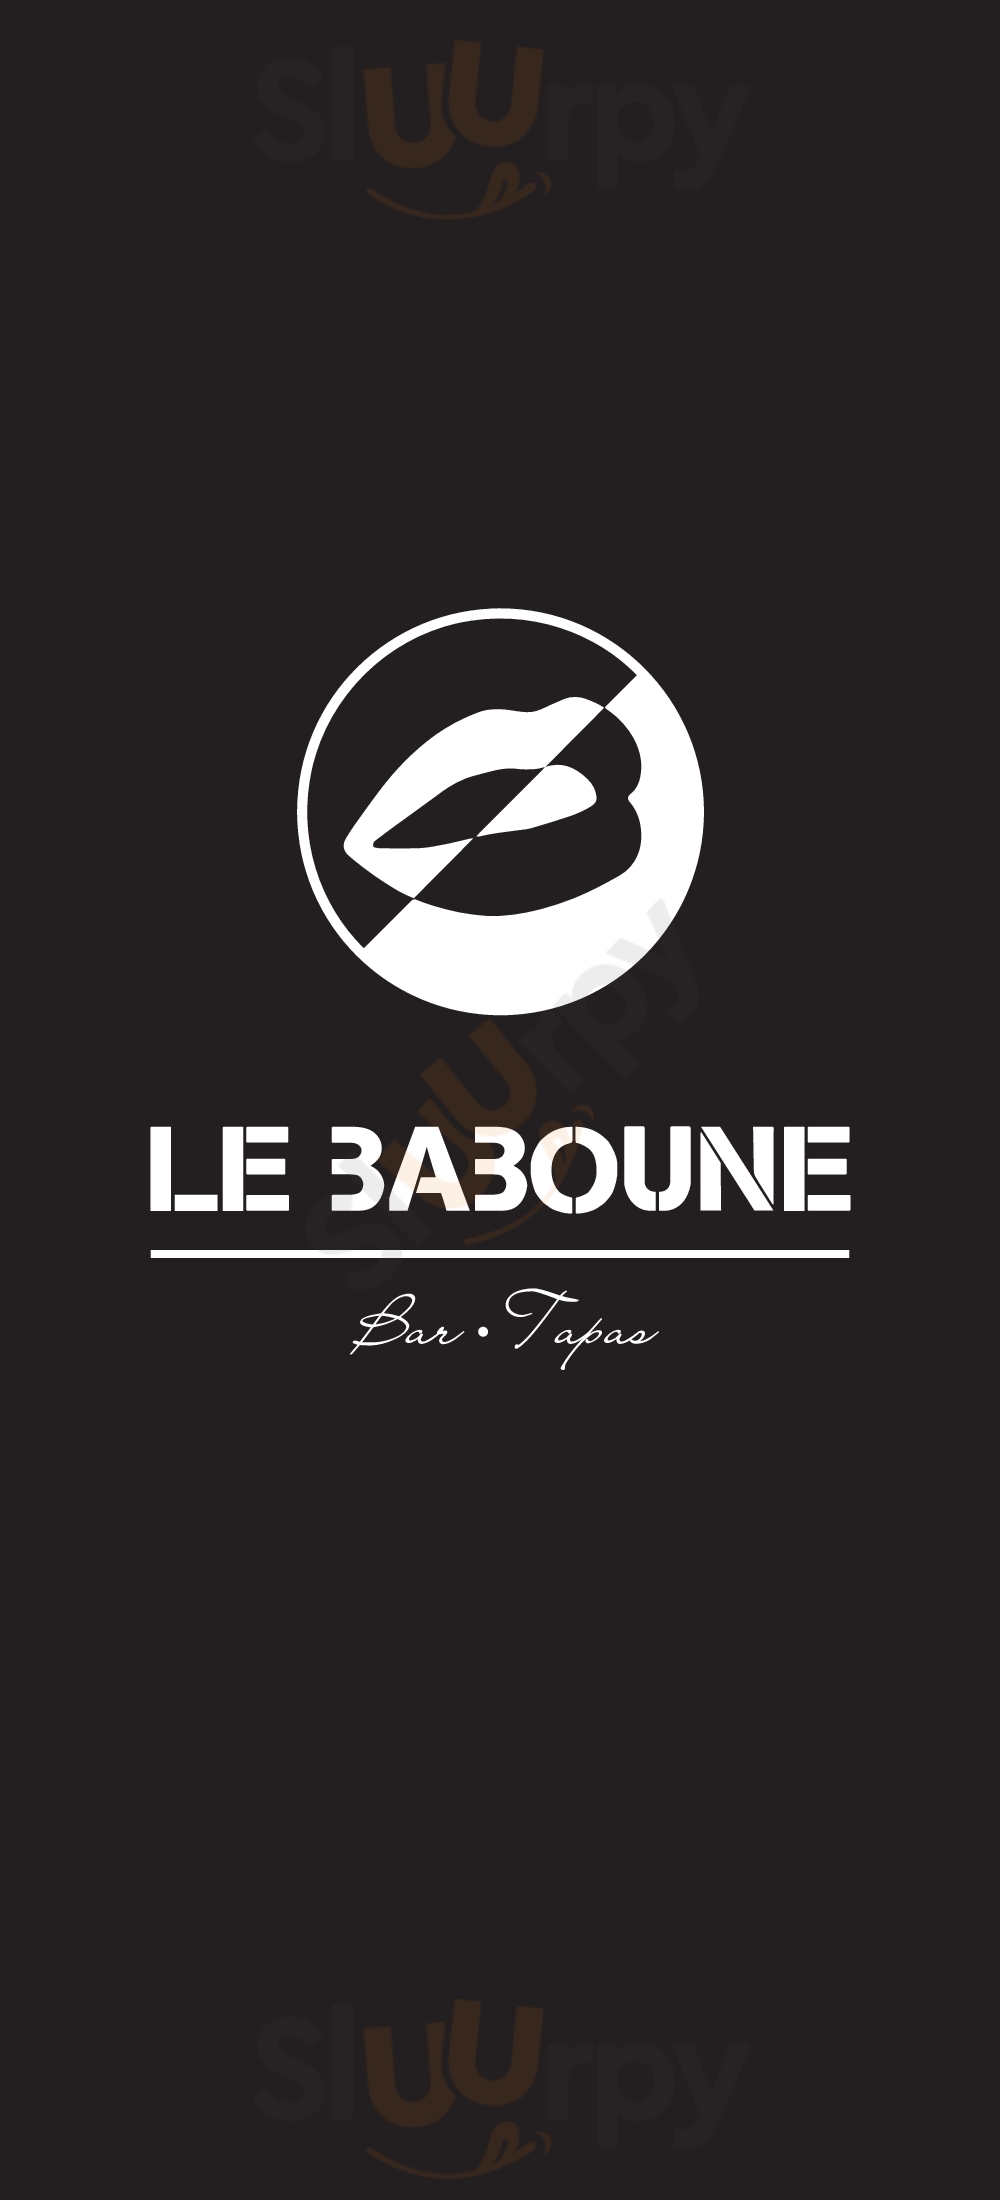 Le Baboune Bar Tapas Drummondville Menu - 1